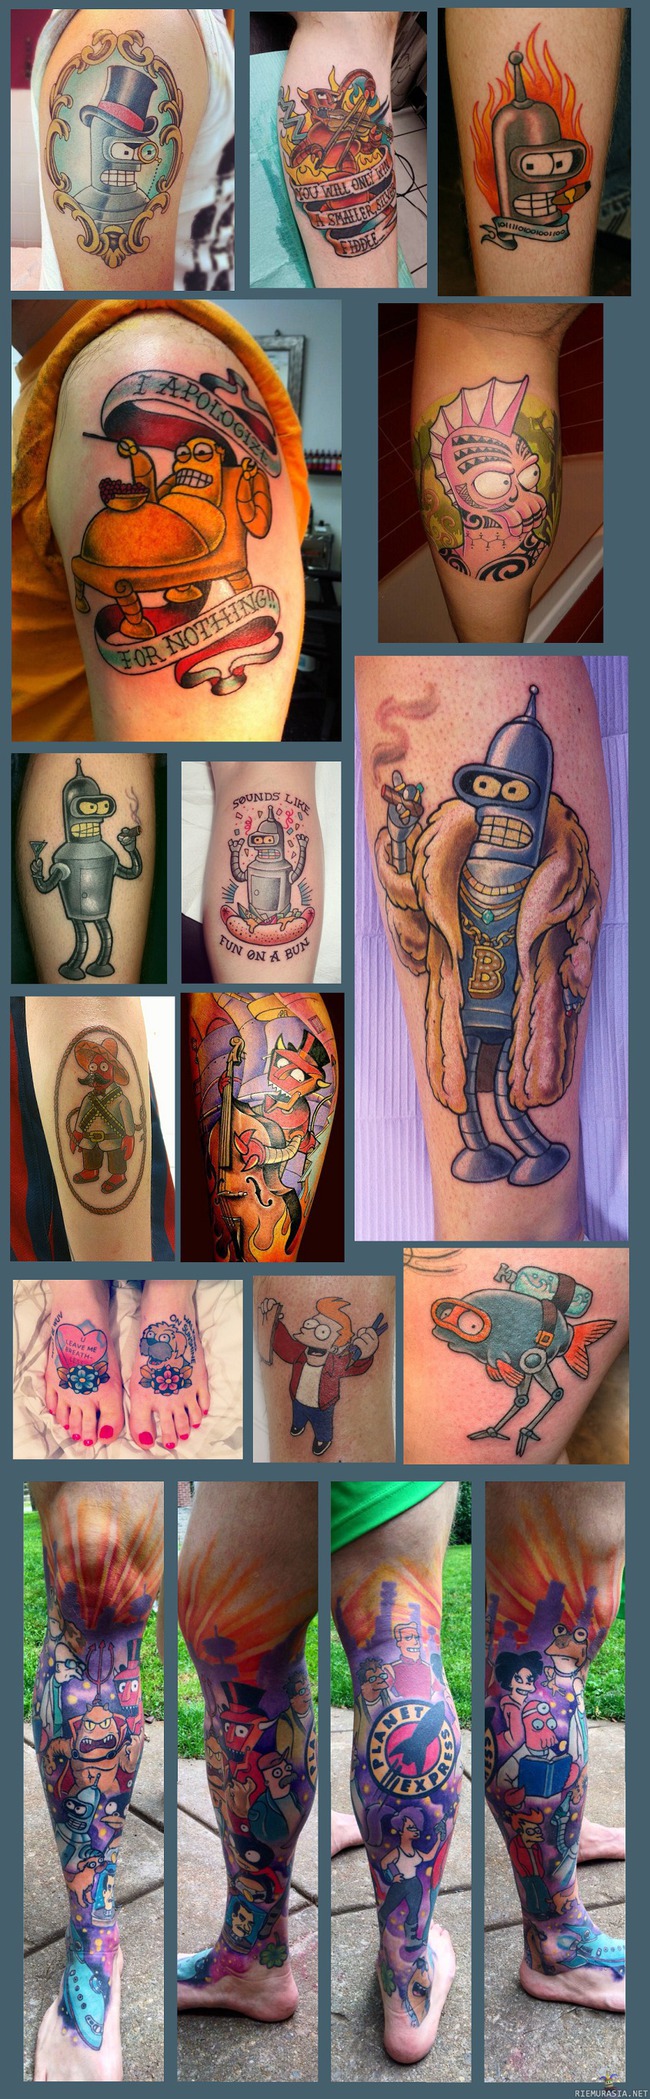 Futuraman fanien tatuointeja